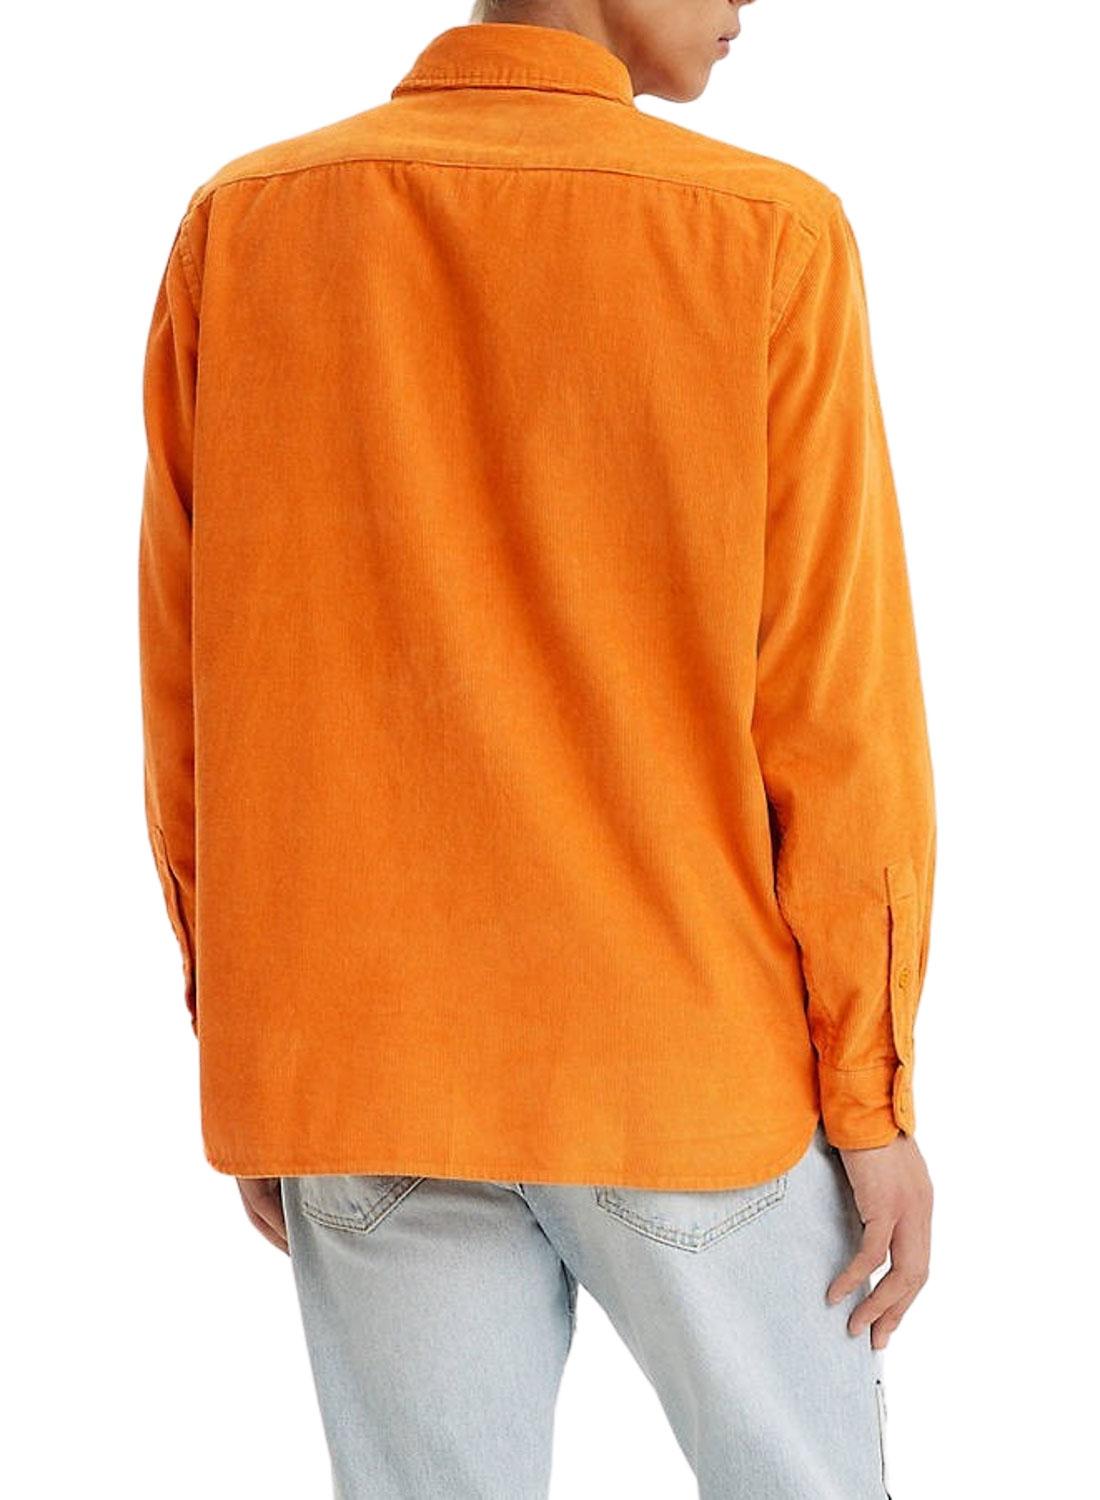 Camicia Levis Jackfiglio Worker Arancione per Uomo